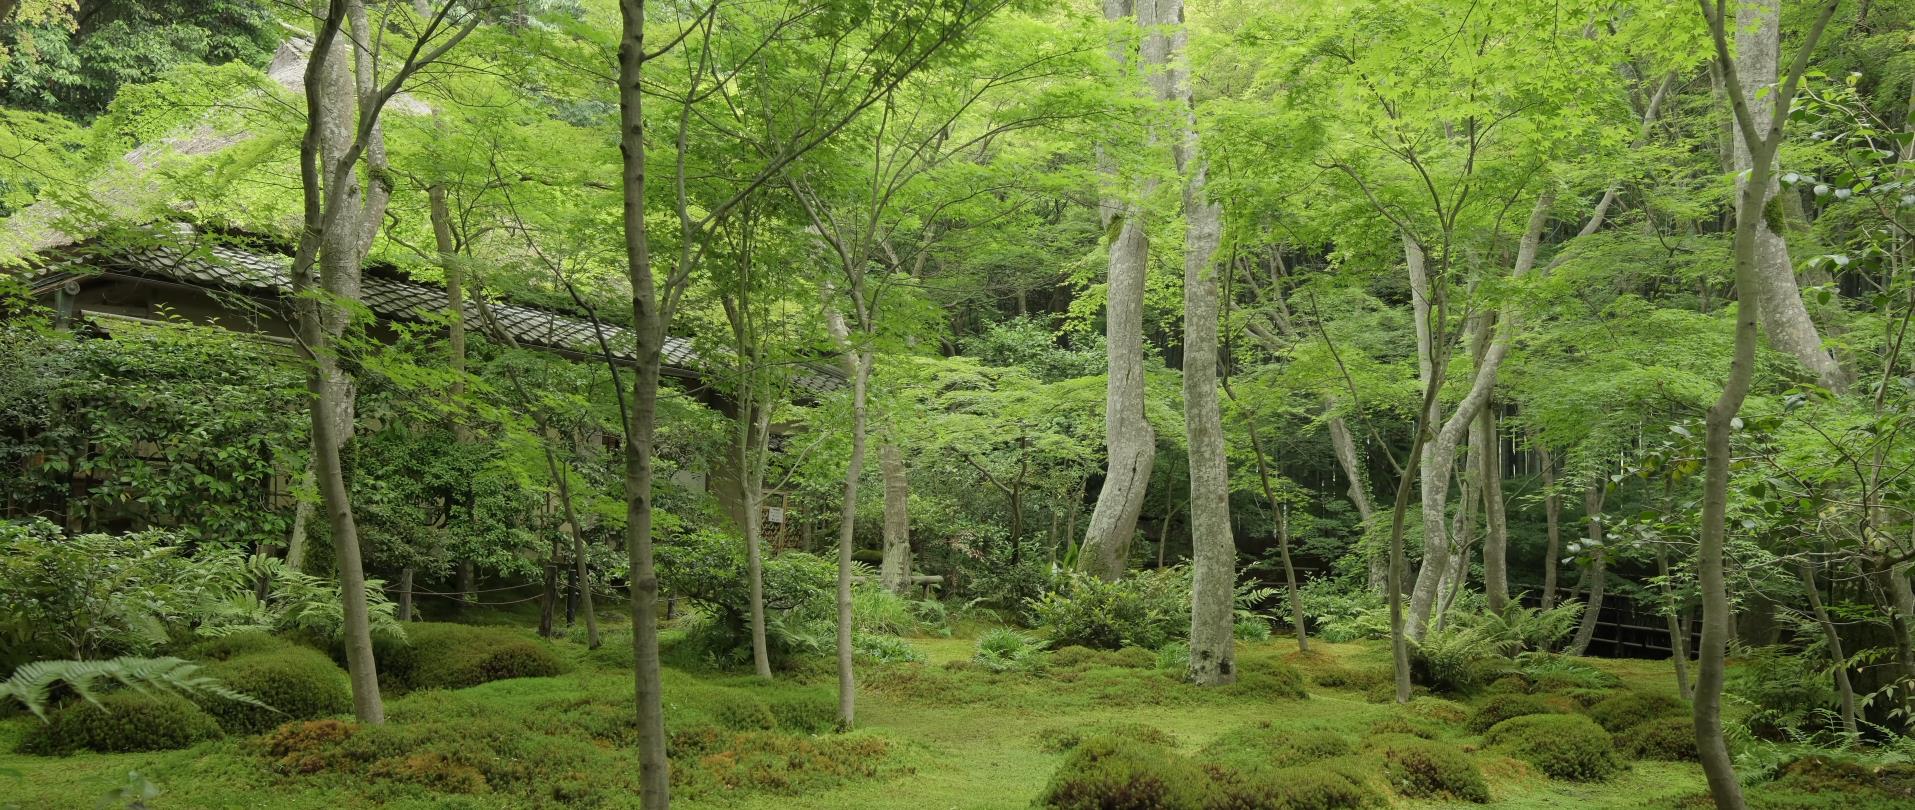 Wabi-Sabi-侘寂庭院,侘寂庭院,京都,侘寂設計,侘寂視頻下載,日式侘寂庭院